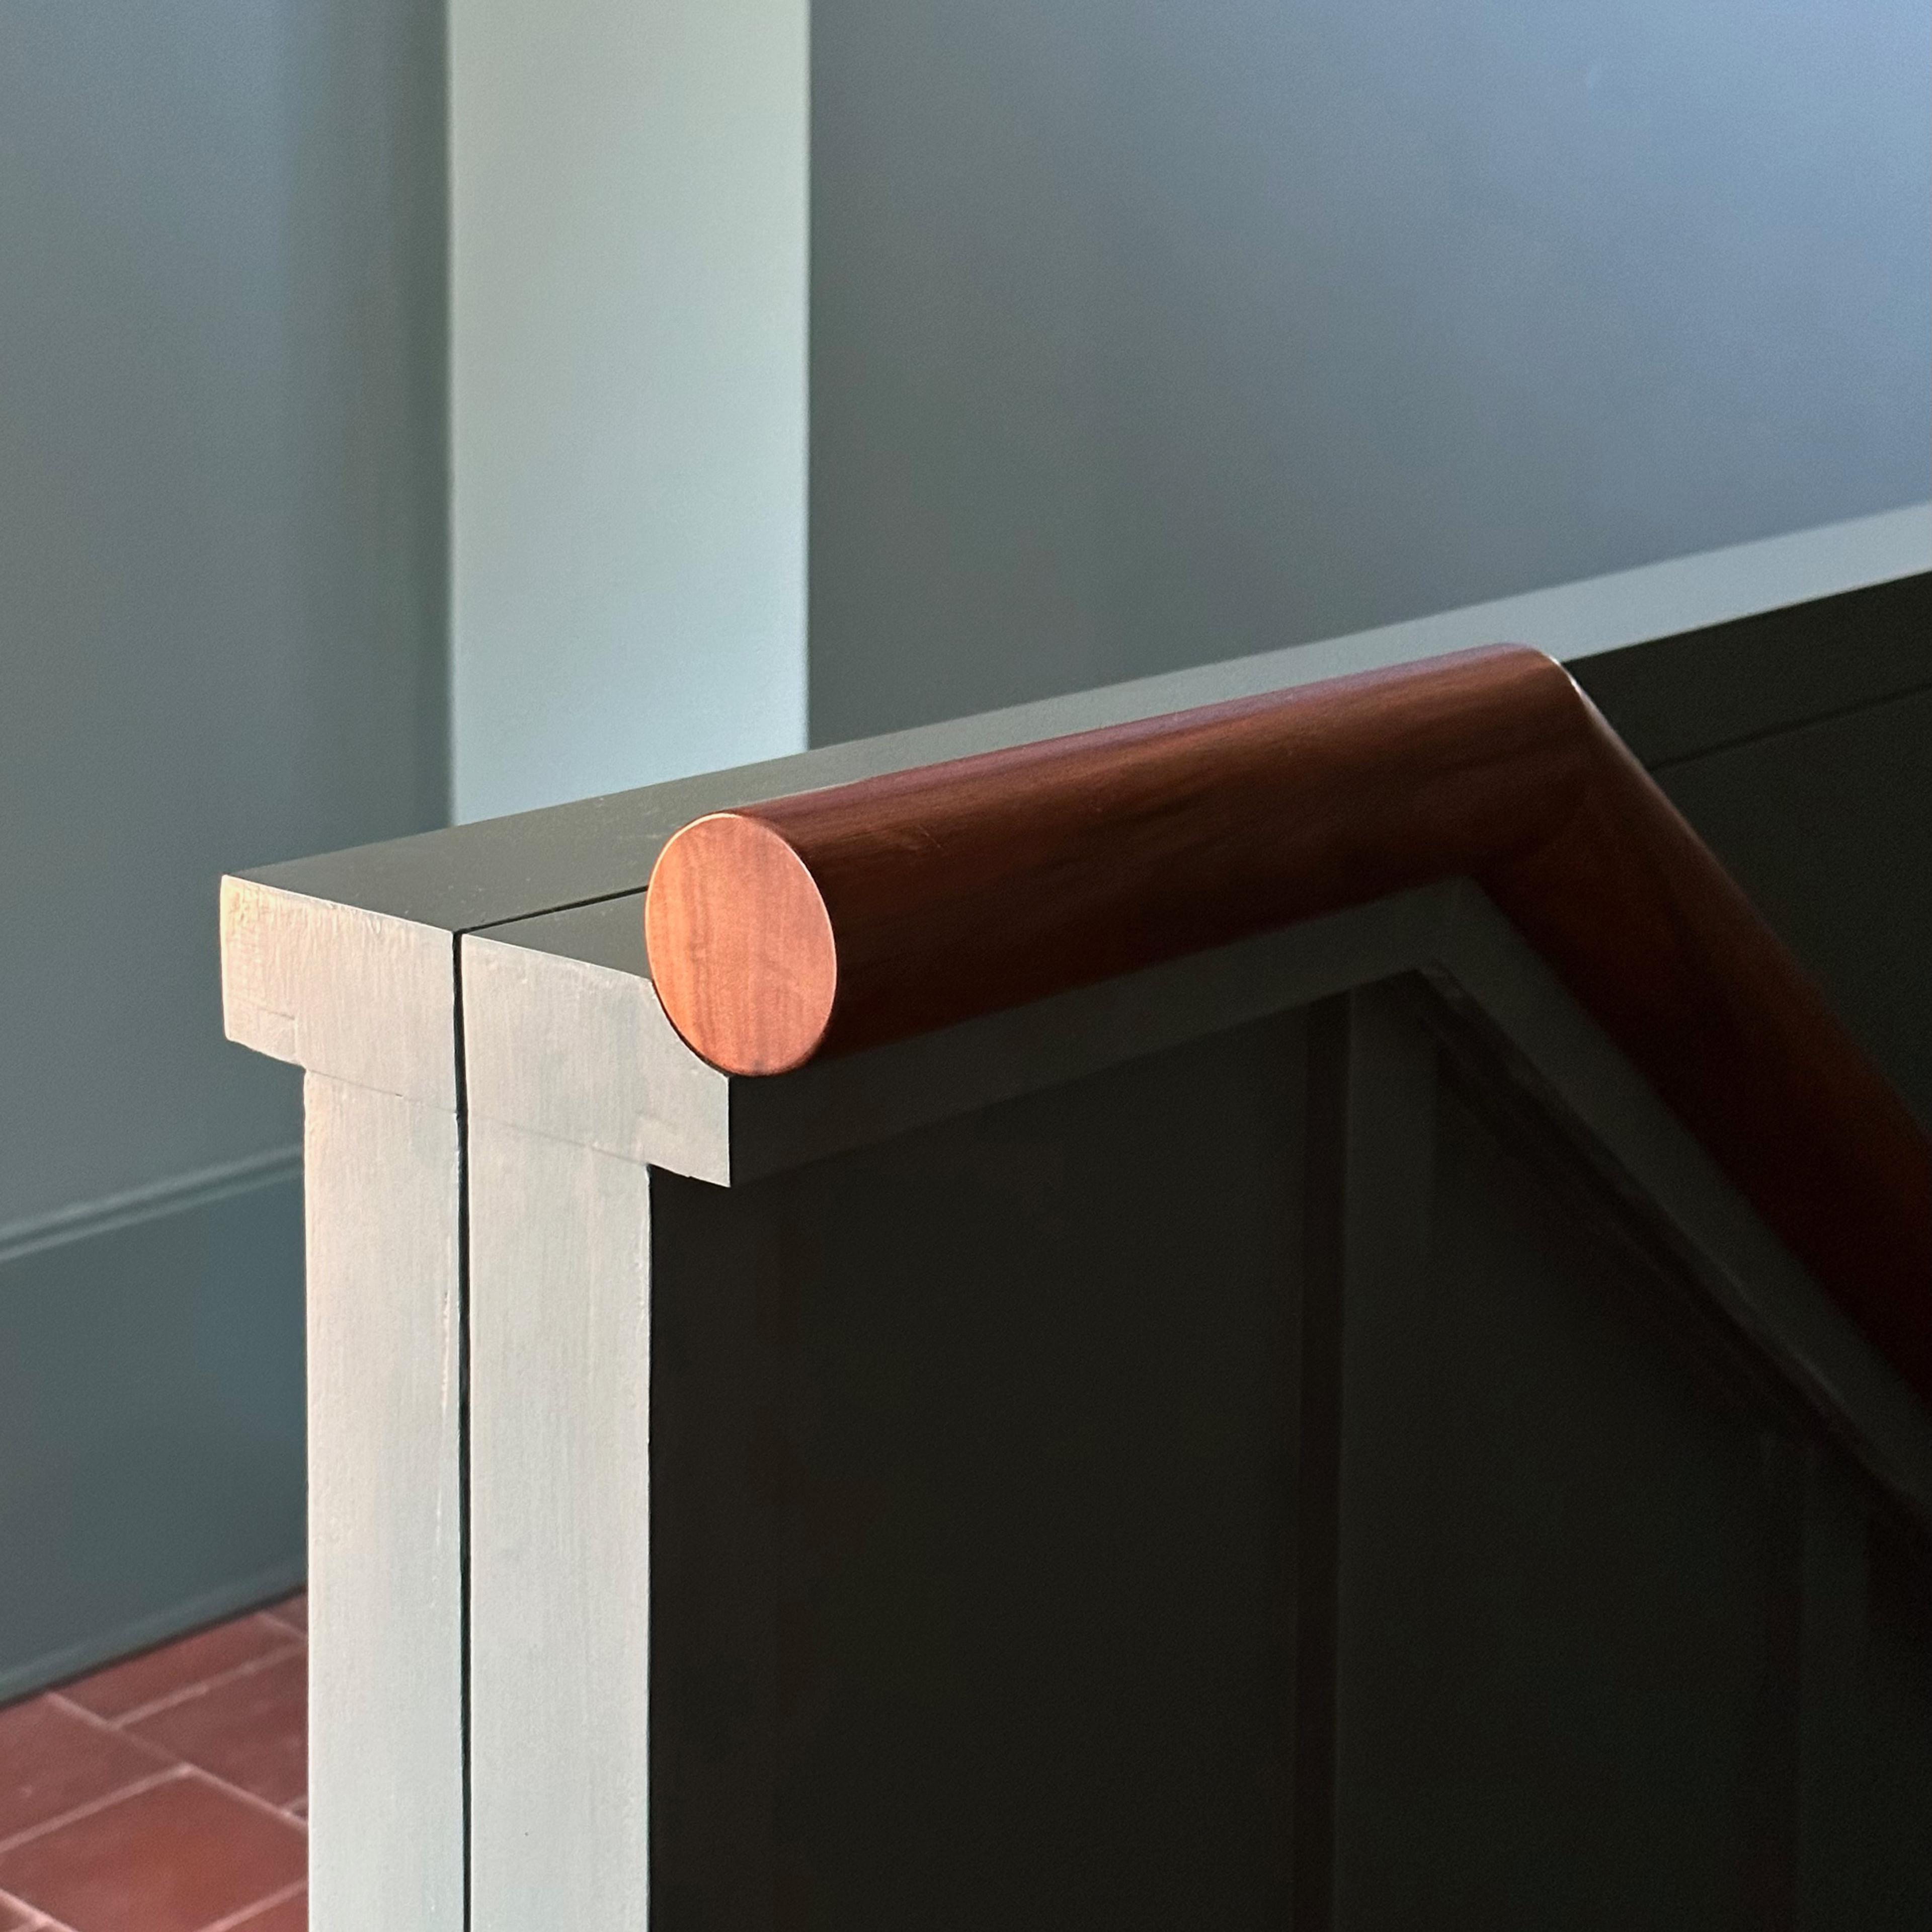 Walnut handrail detail